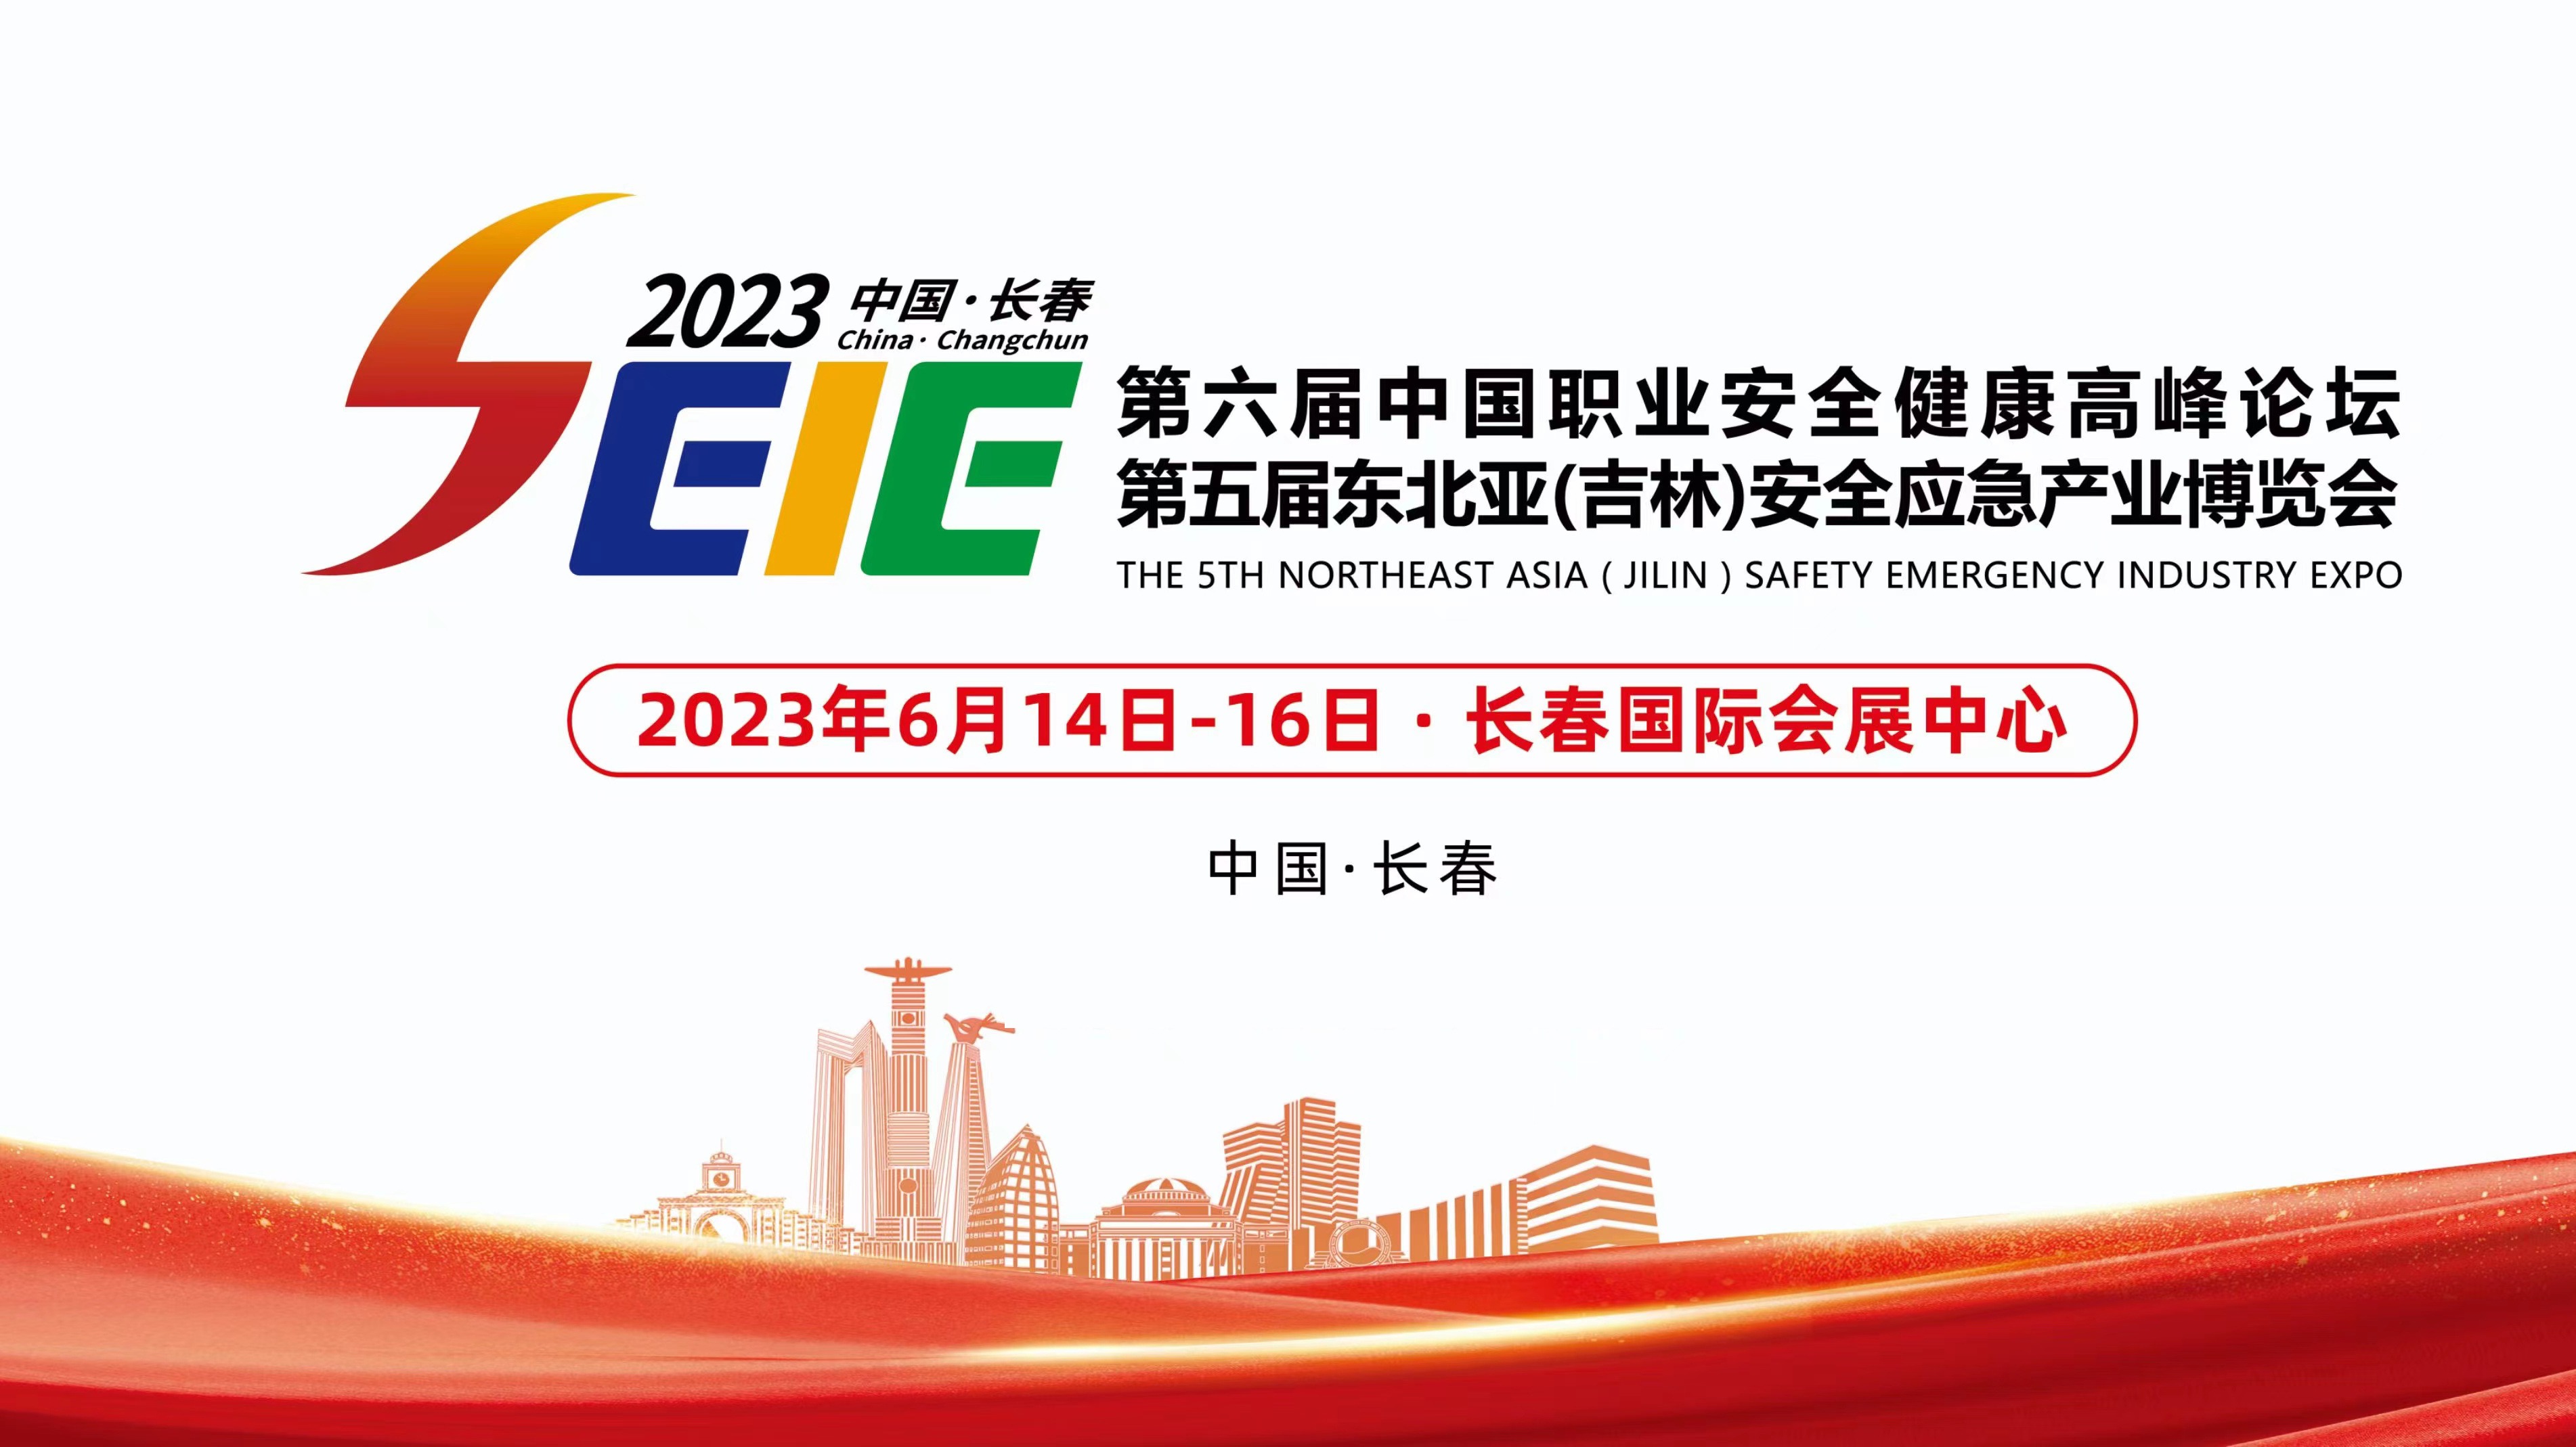 2023吉林应急展-第五届东北亚(吉林)安全应急产业博览会